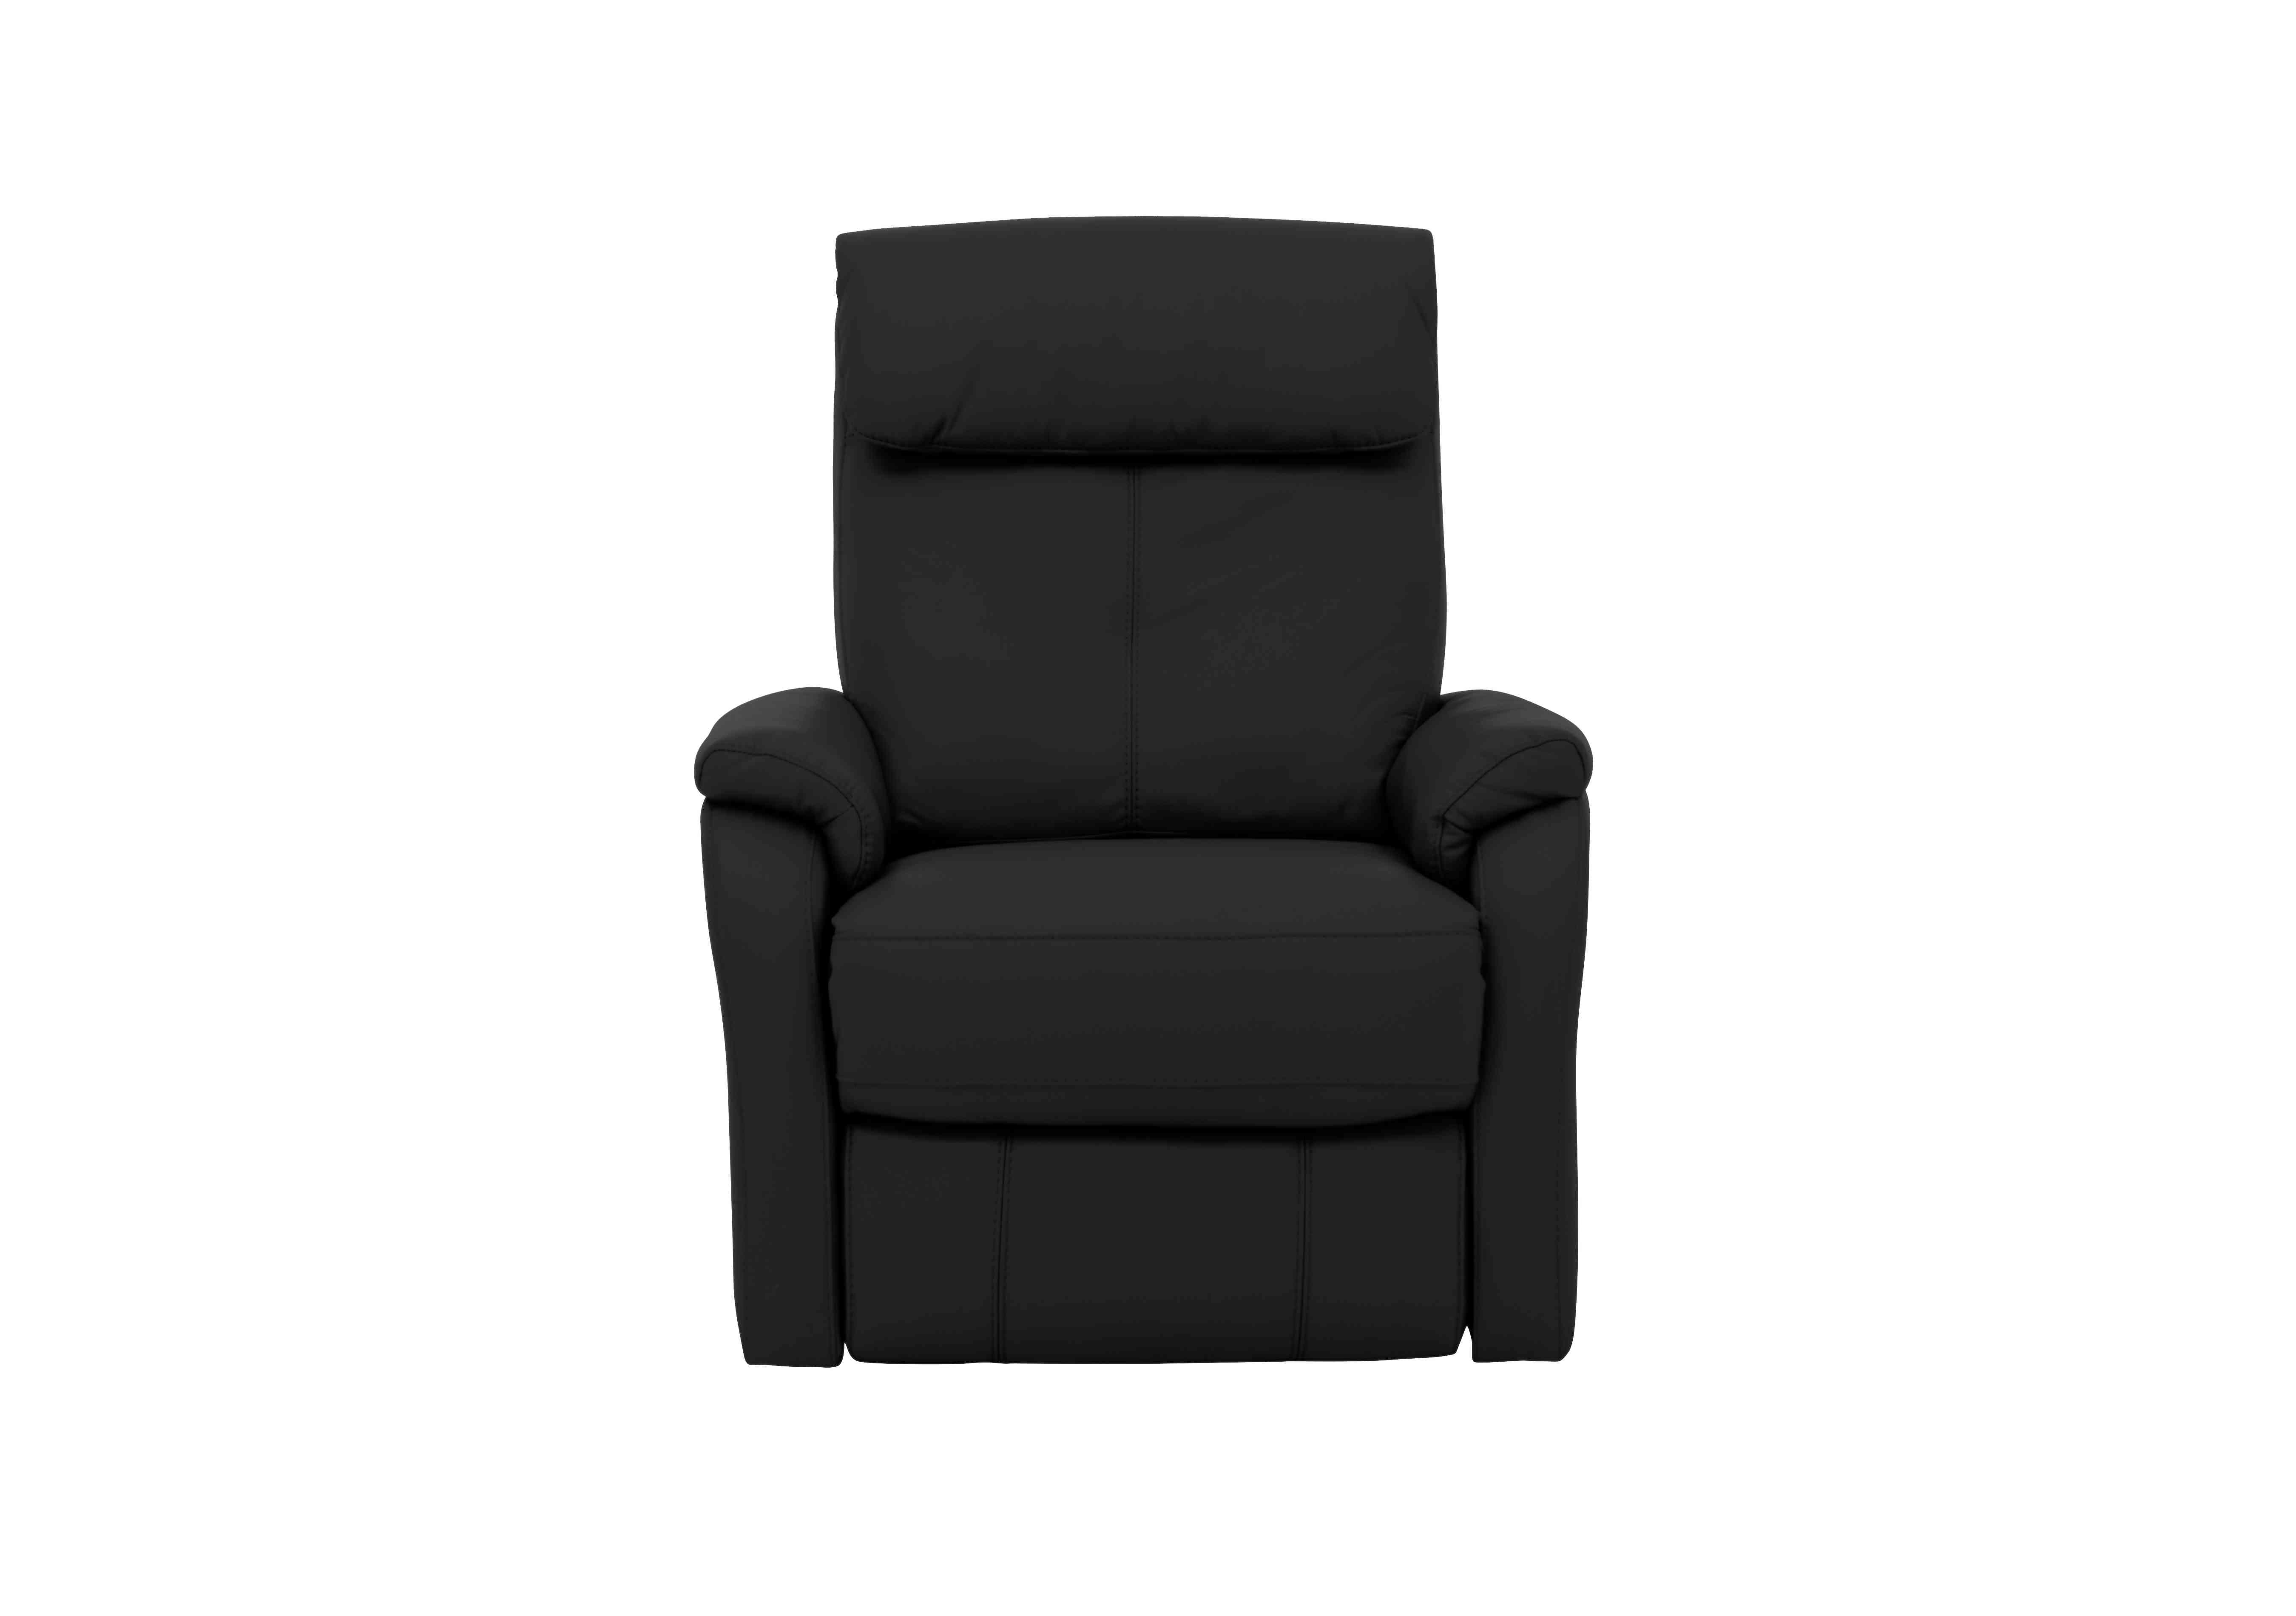 Rowan Leather Swivel Rocker Recliner Armchair in An-671b Black on Furniture Village